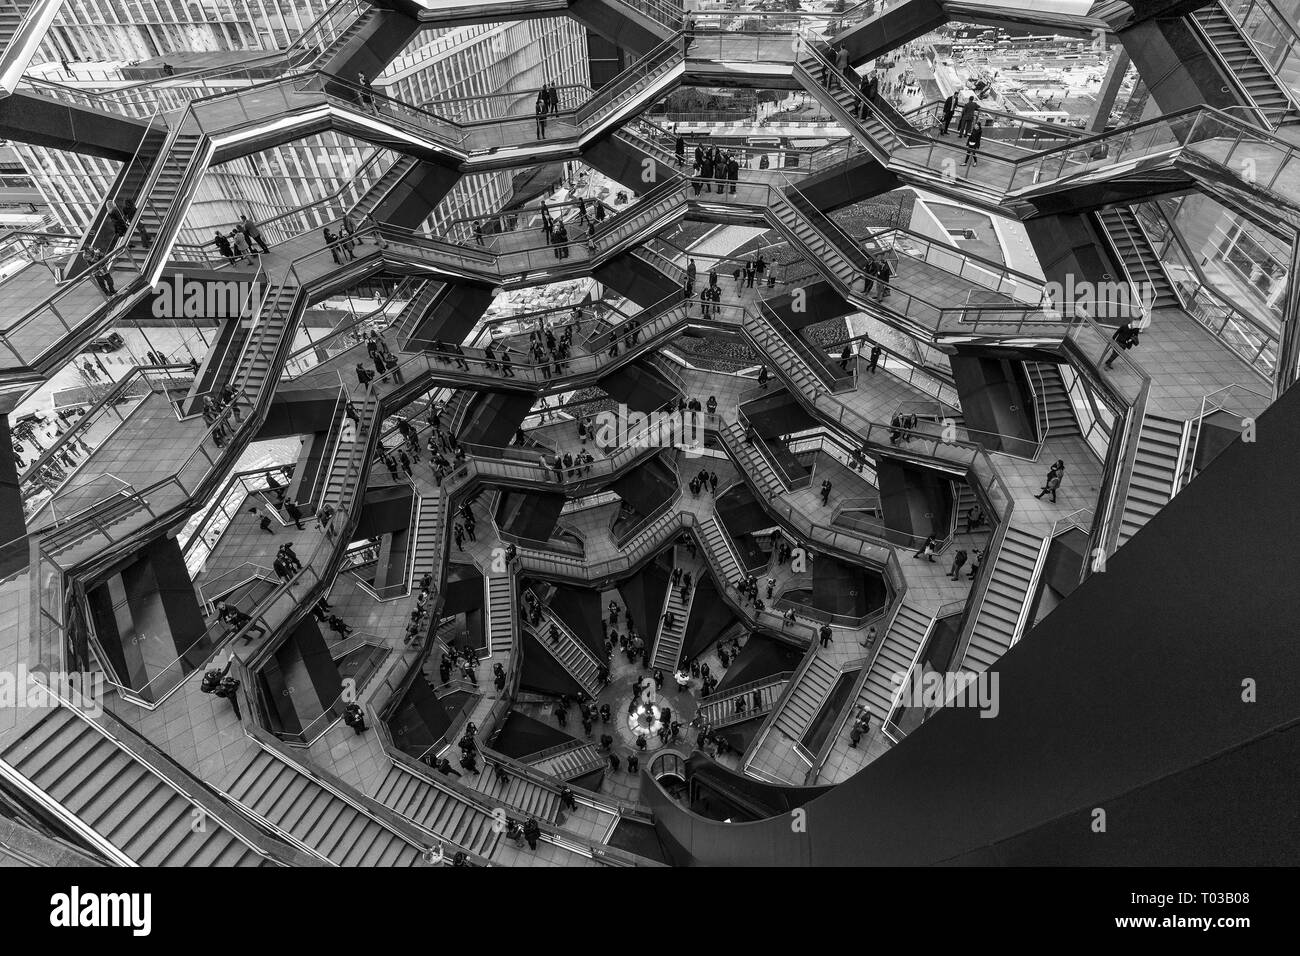 Hudson Yards ist lagest private Entwicklung in New York. Blick auf das Schiff, bestehend aus 155 Treppen am Hudson Yards von Manhattan bei der Eröffnung (Foto von Lew Radin/Pacific Press) Stockfoto